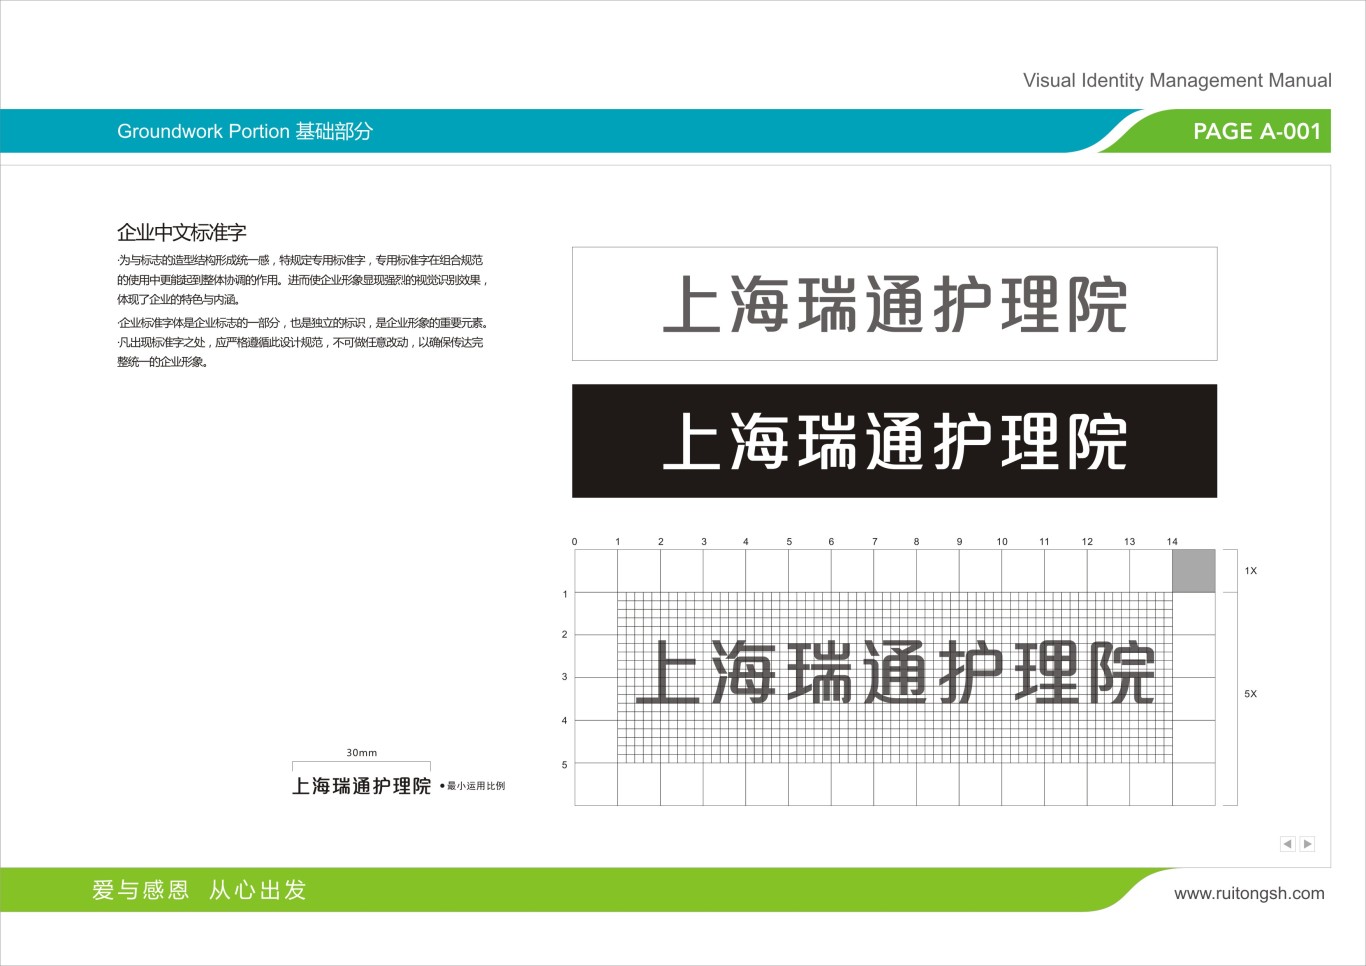 上海瑞通护理院标志VI设计图20